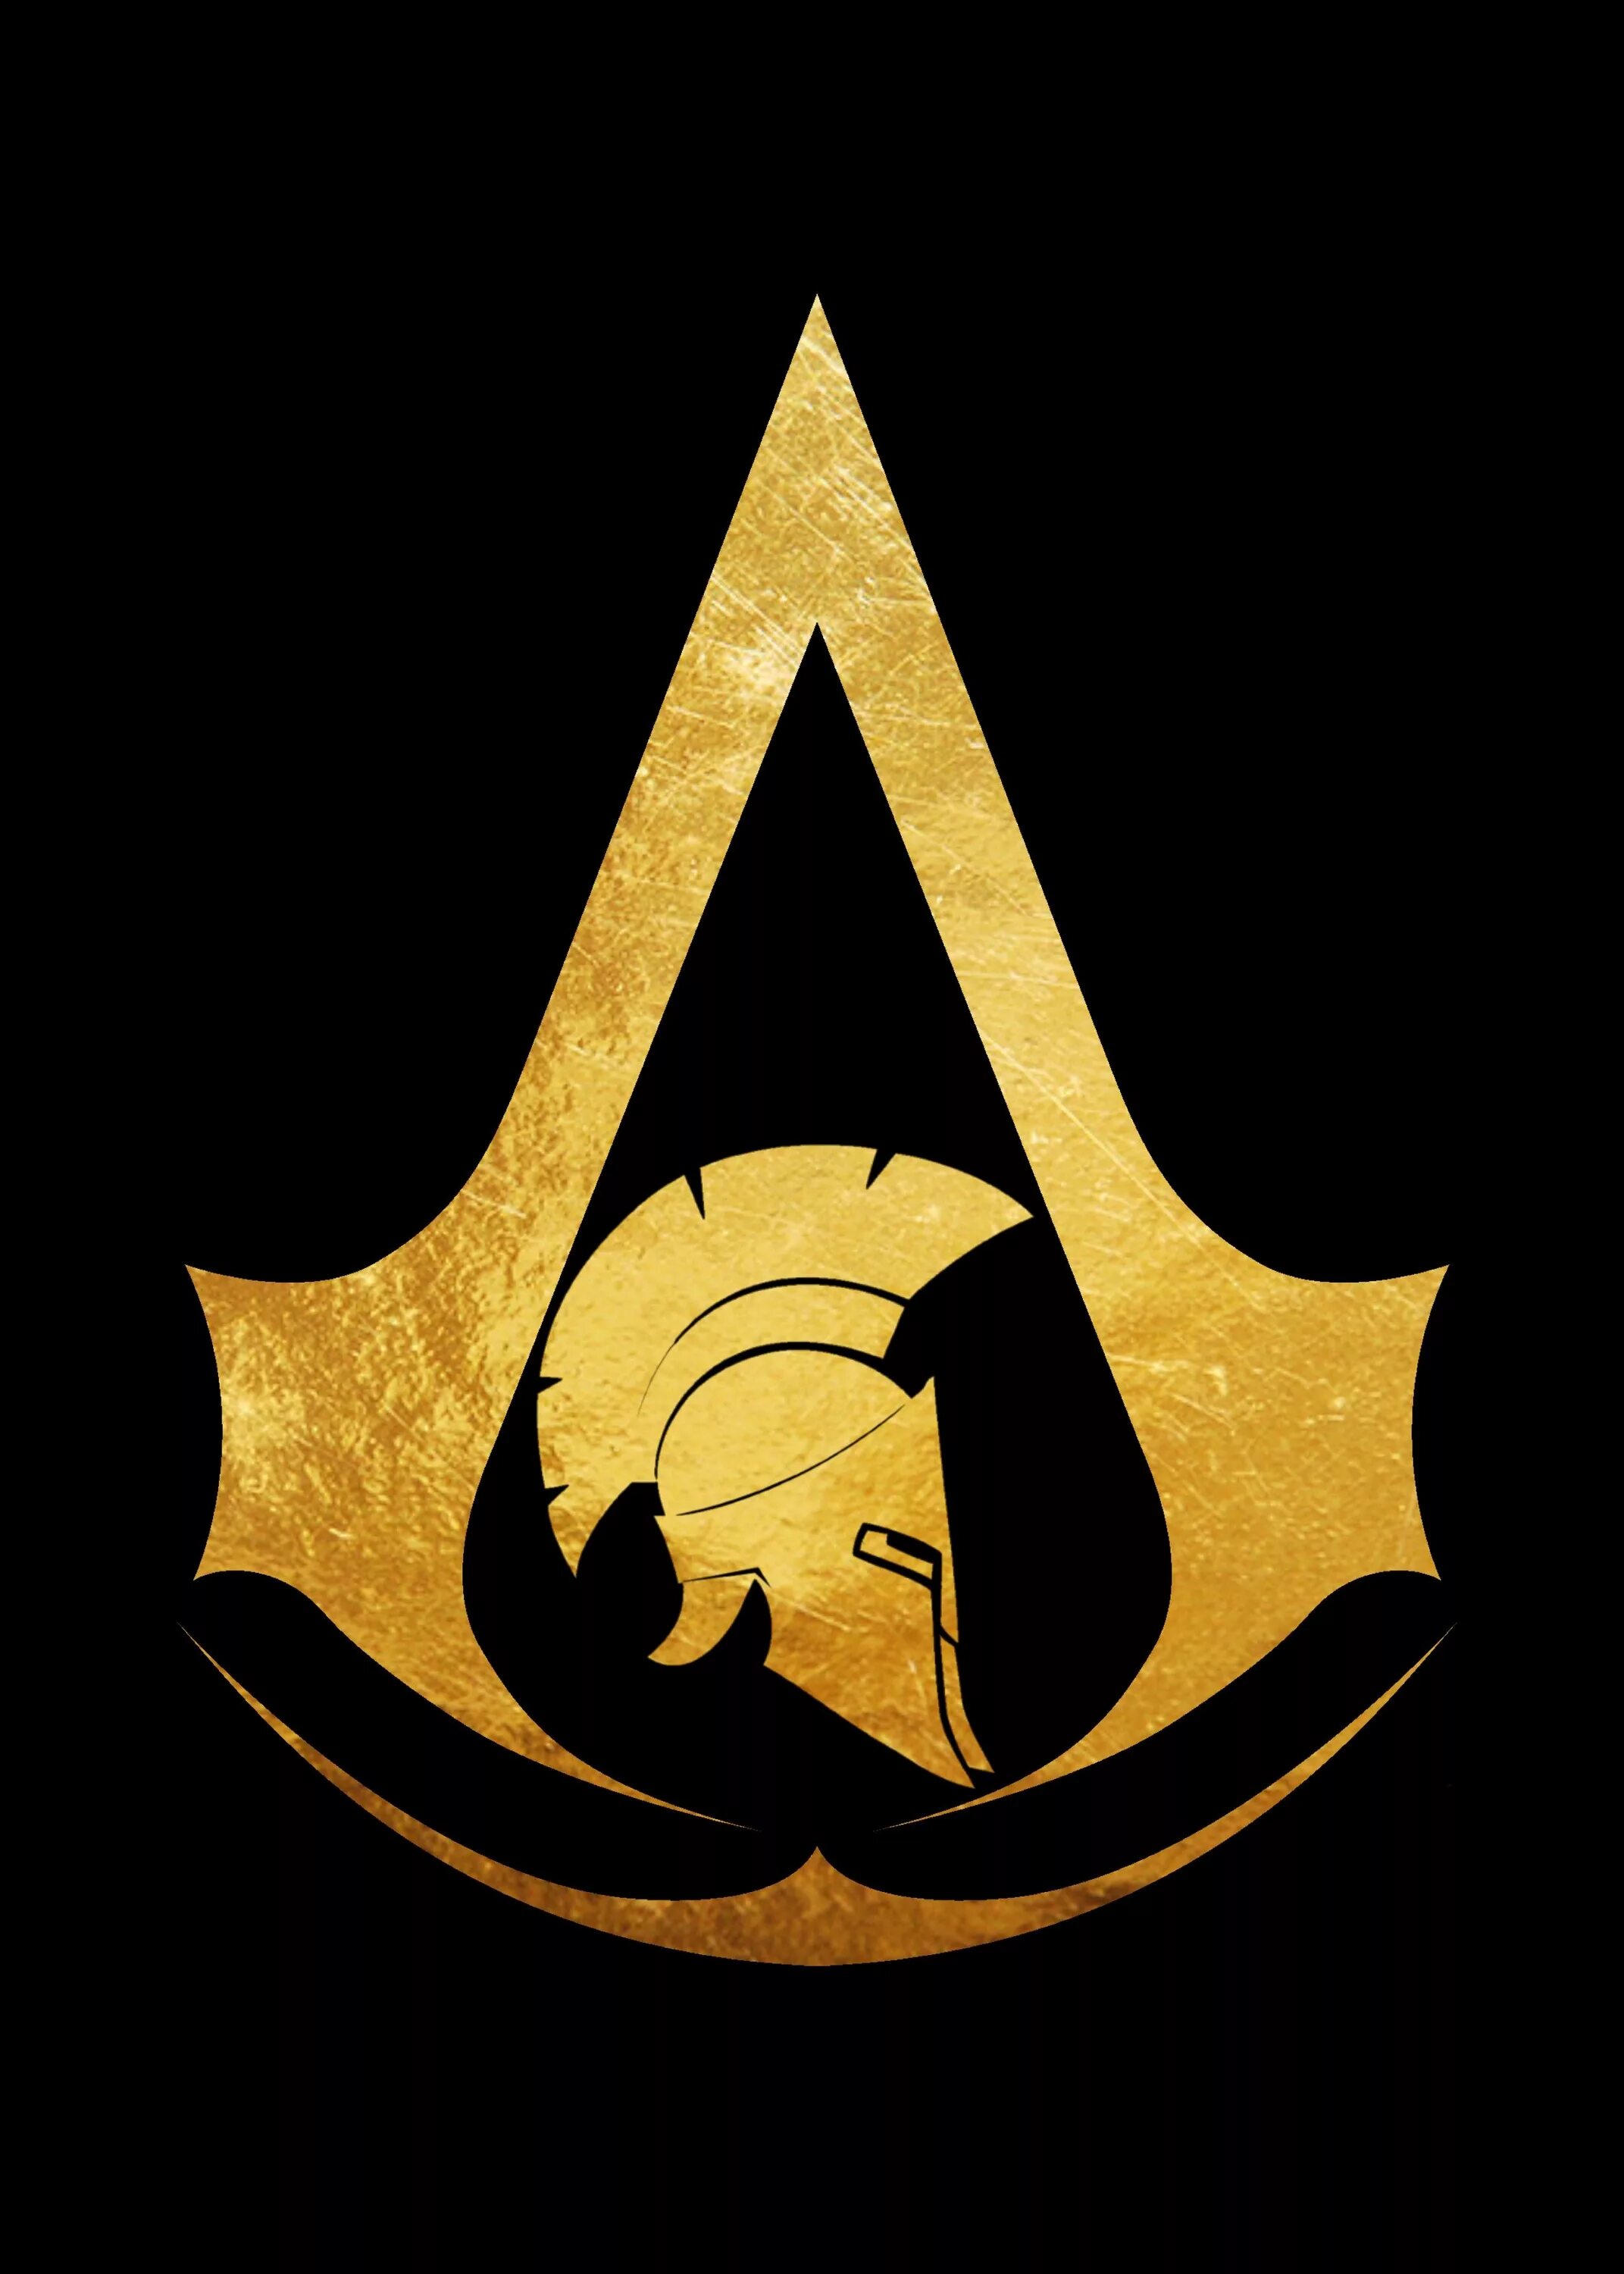 Значок ассасин крид. Assassin's Creed символ. Ассасин Крид значок. Assassin's Creed 1 знак ассасинов. Ассасин Крид знак ассасинов.